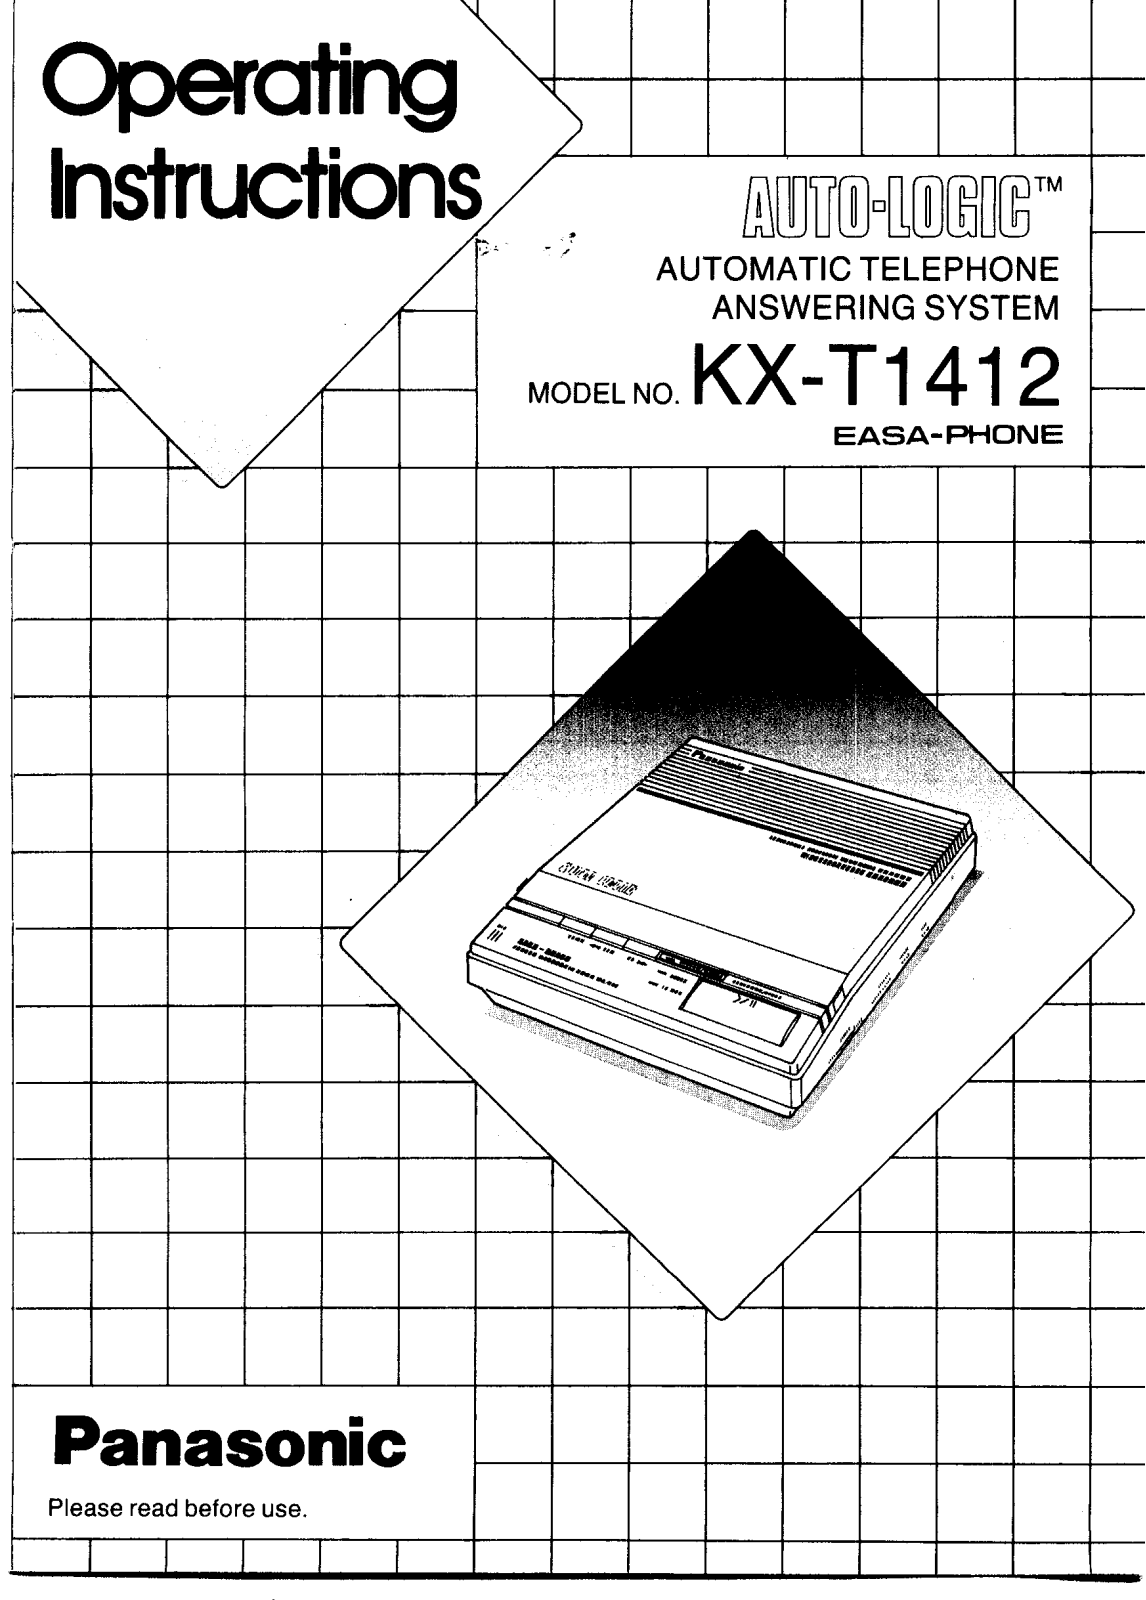 Panasonic kx-t1412 Operation Manual